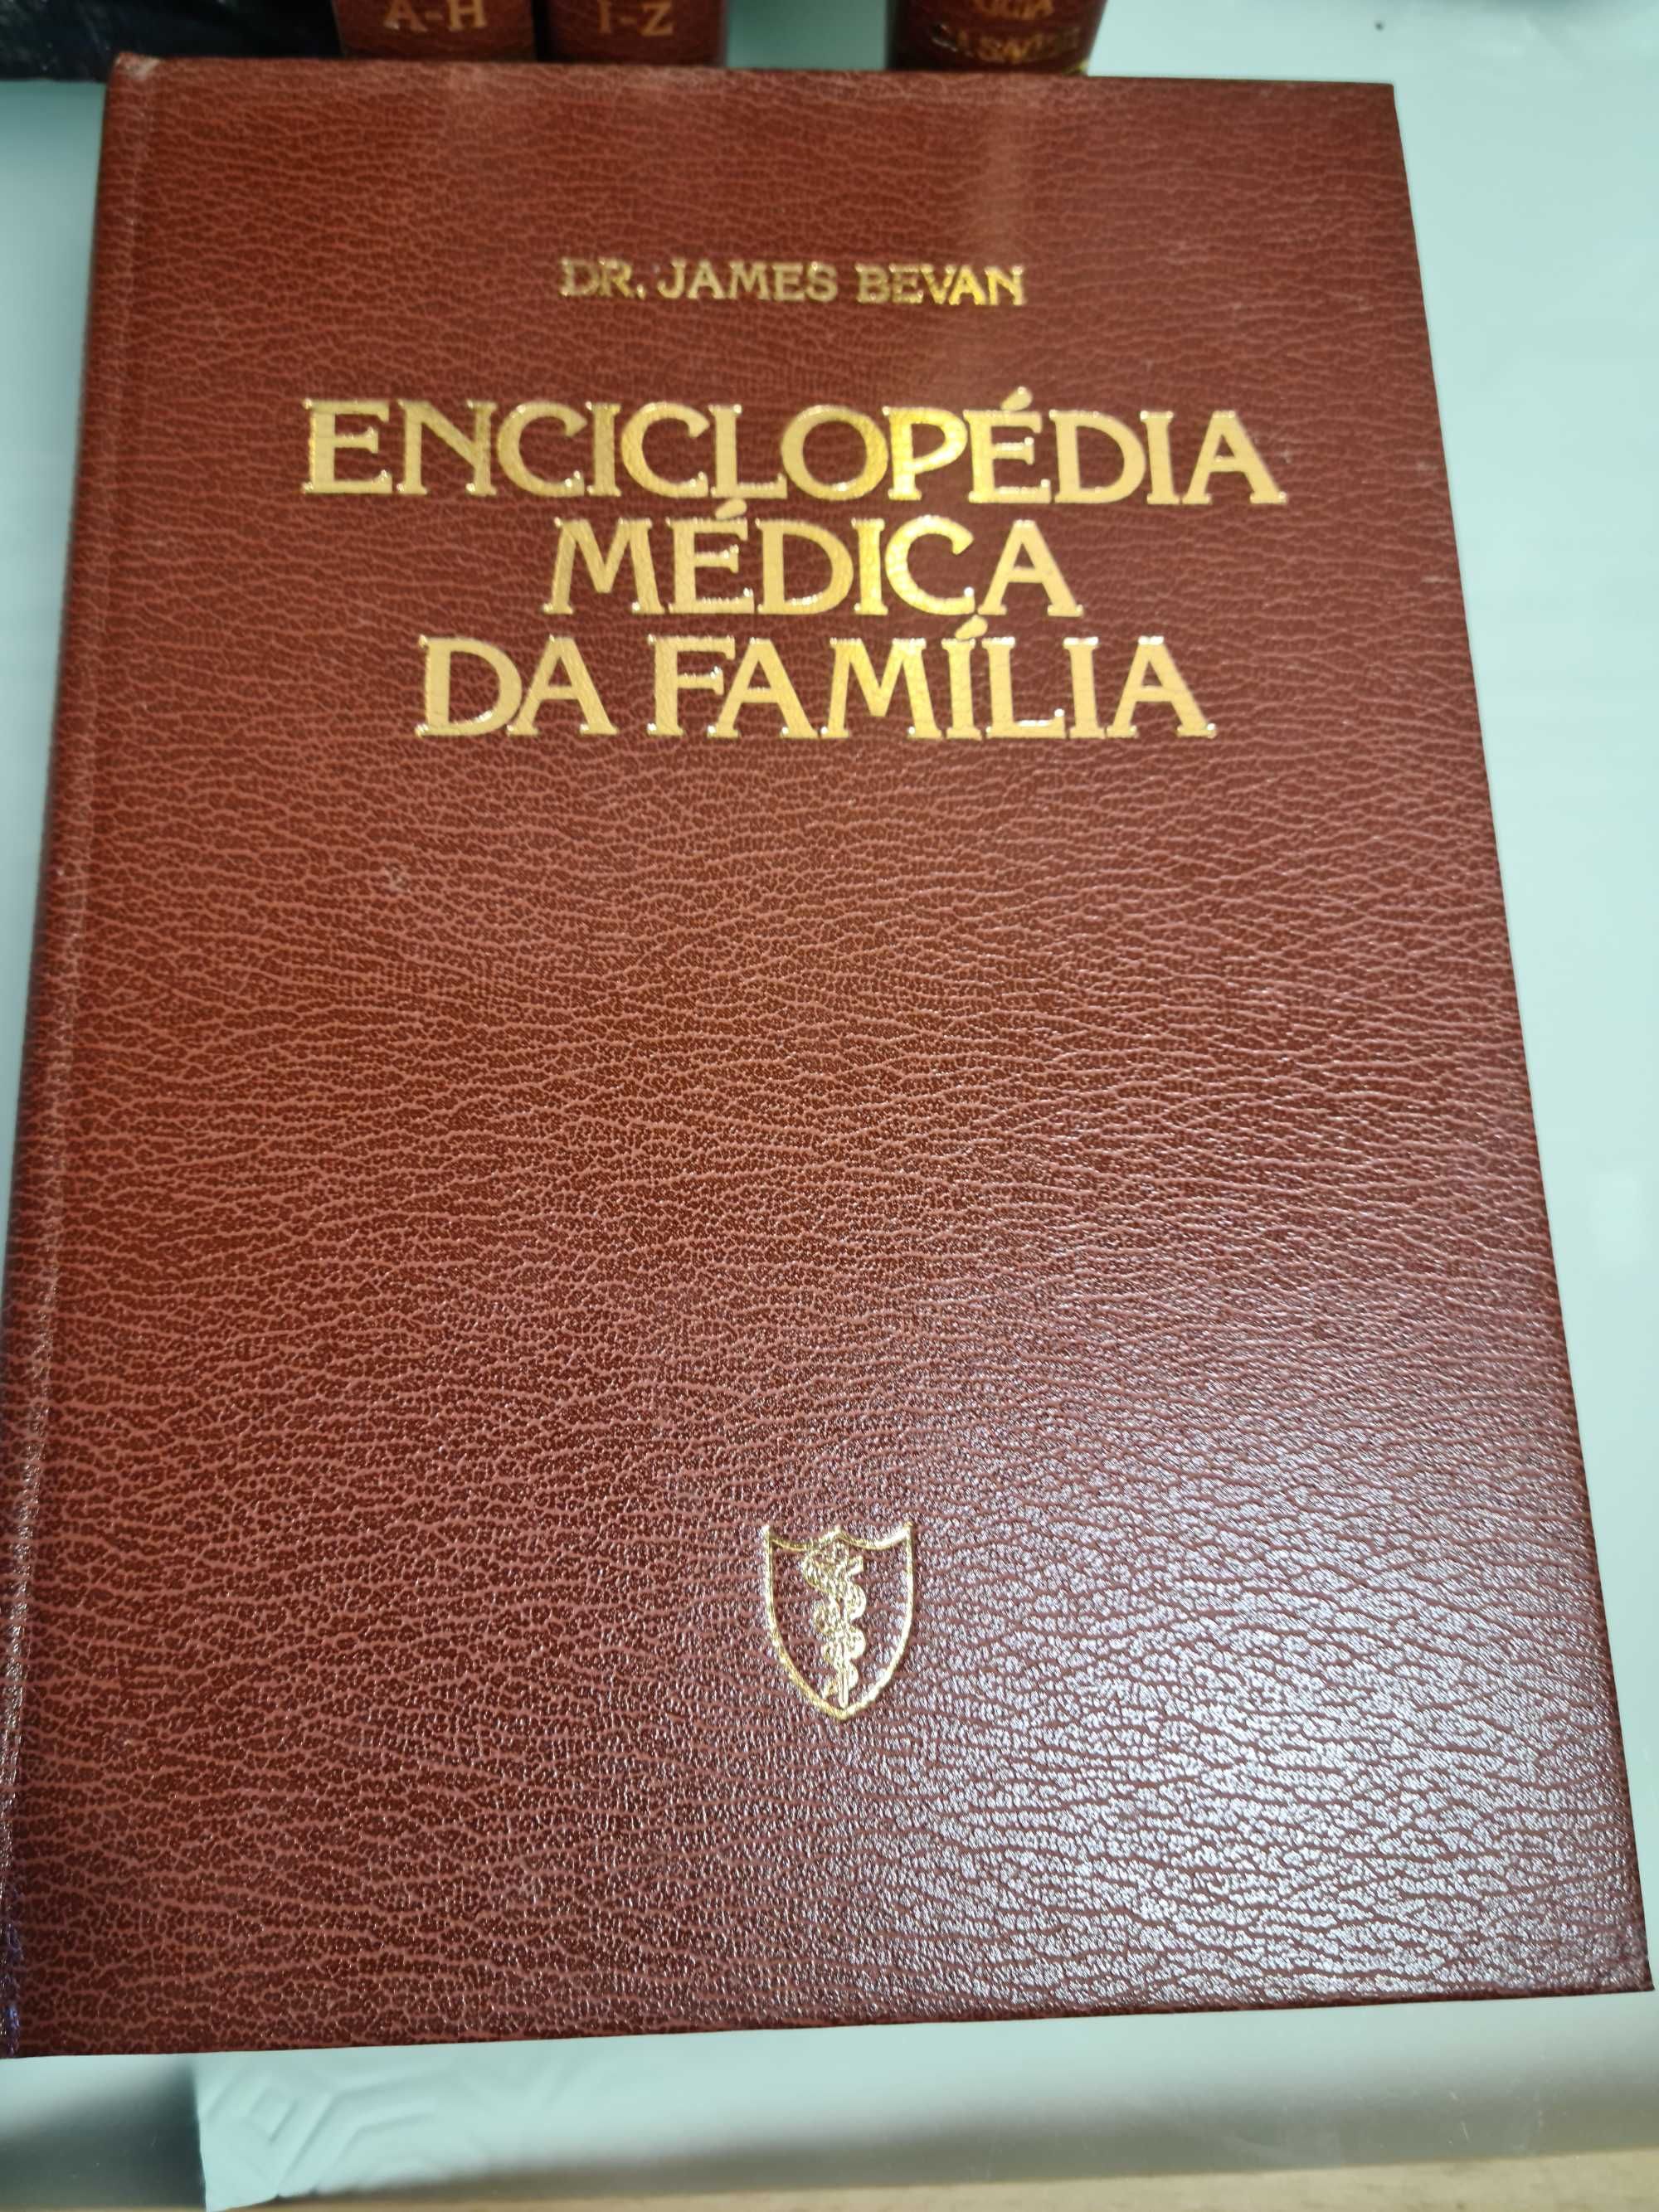 Enciclopédia Médica da Familia